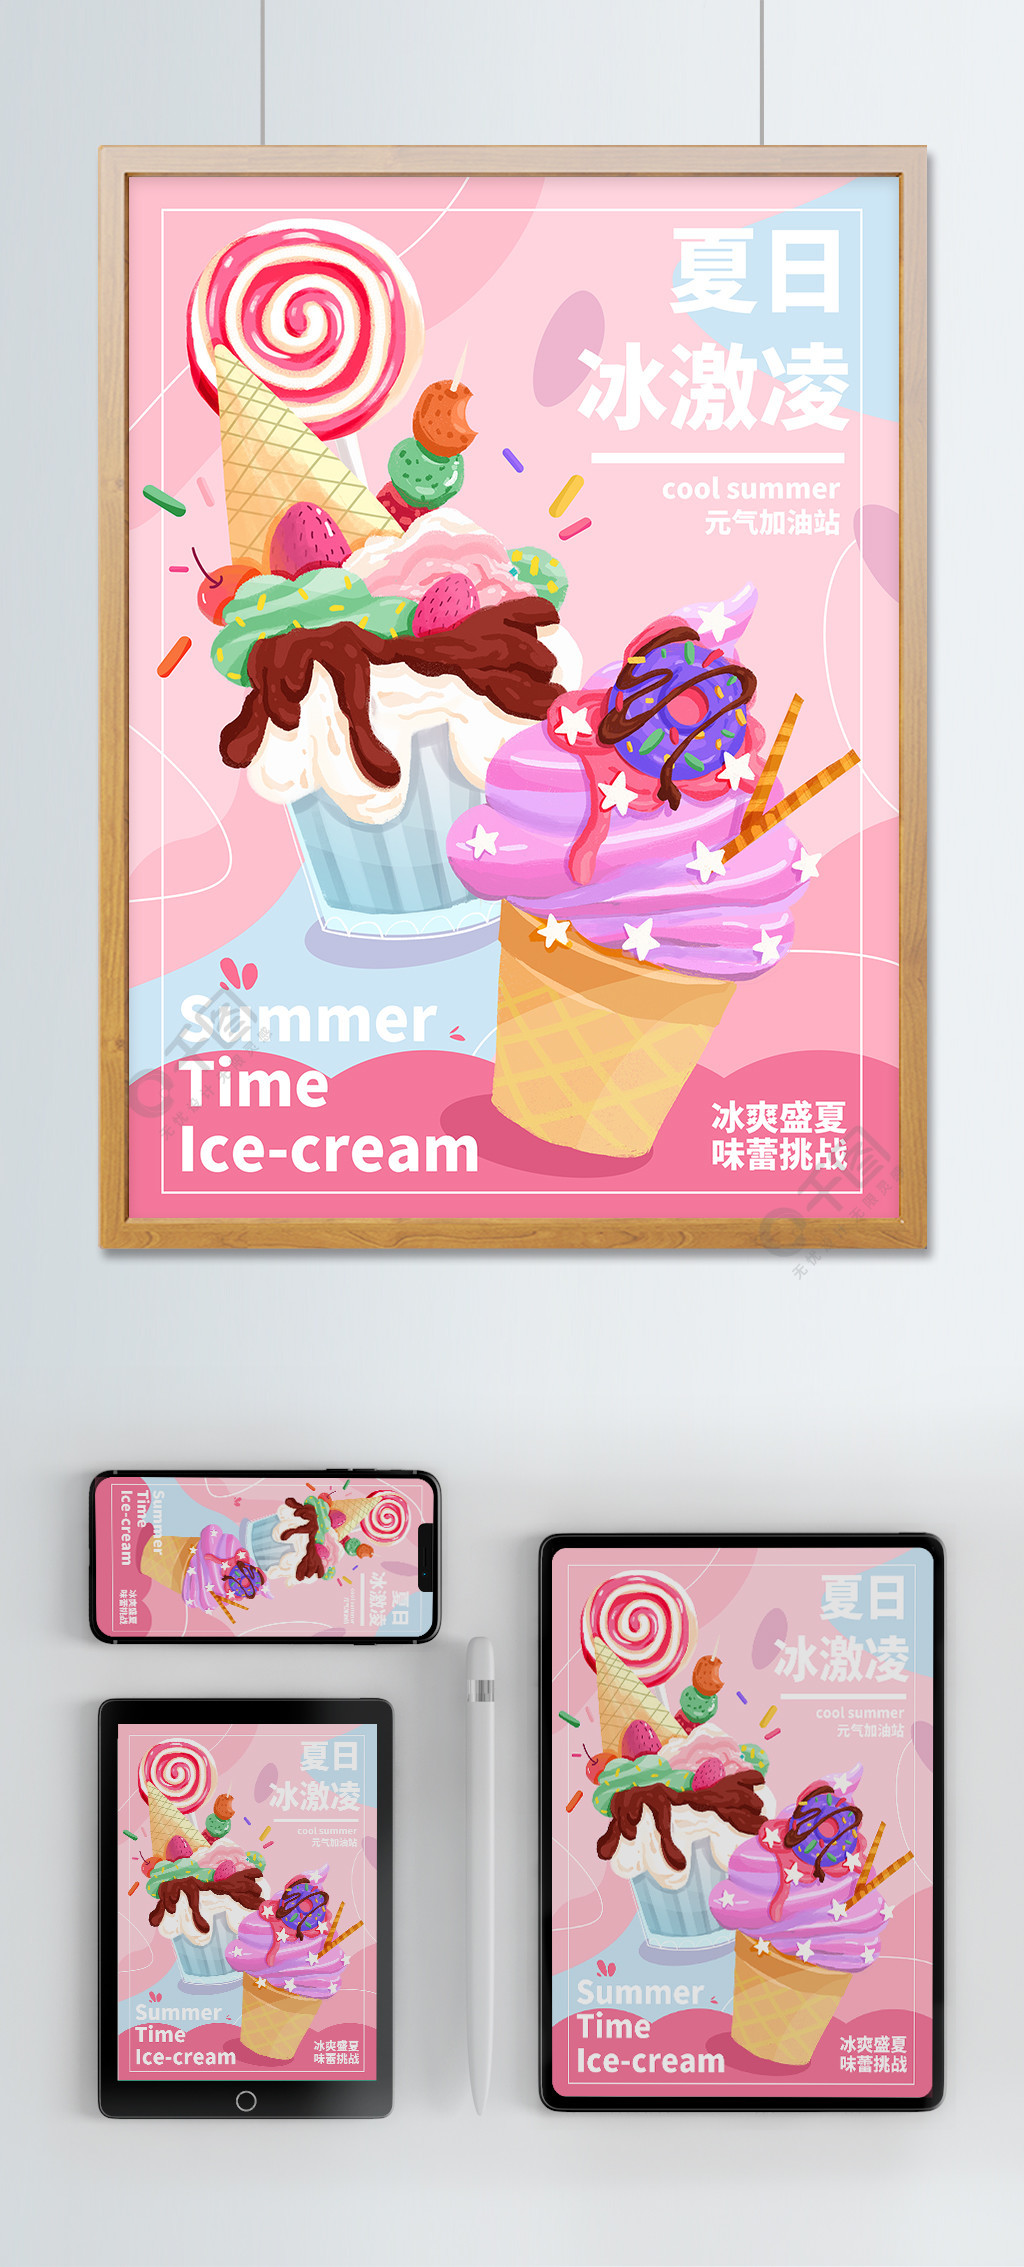 夏日饮料甜品冰激凌手绘插画1年前发布